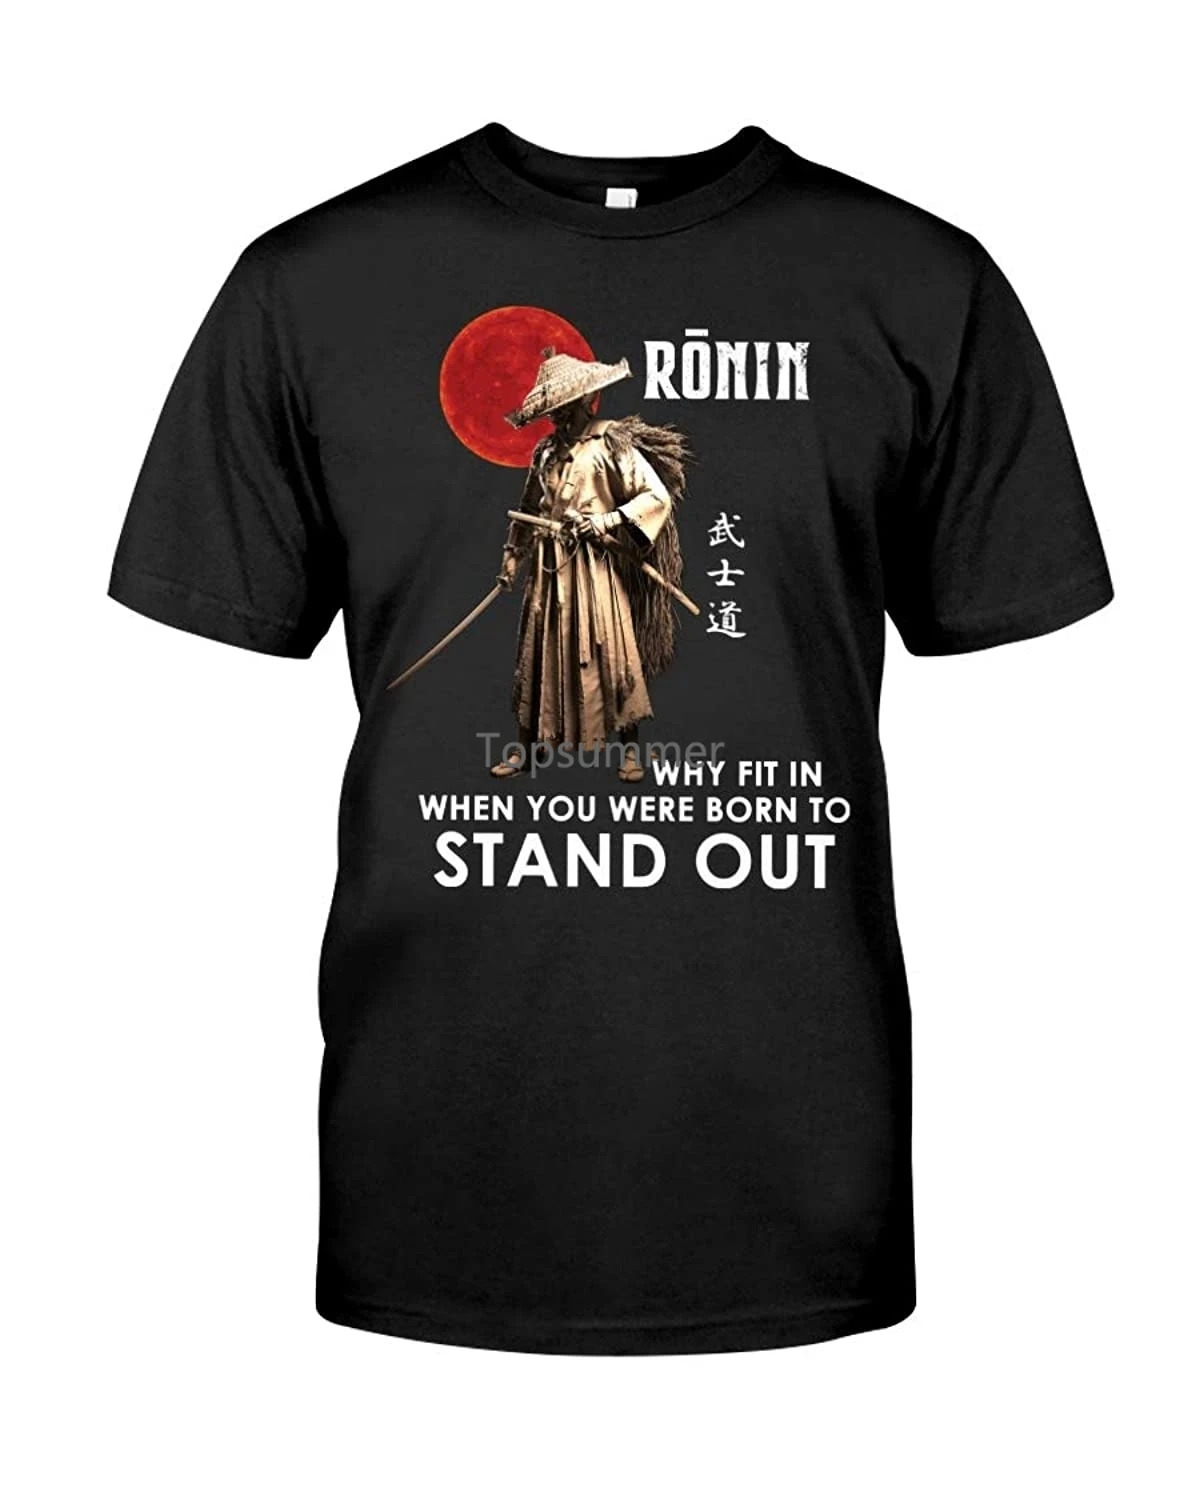 

Забавная рубашка самурая Ronin Why Fit In, когда вы родились, чтобы выделяться, Специальная футболка, подарок для мужчин и женщин